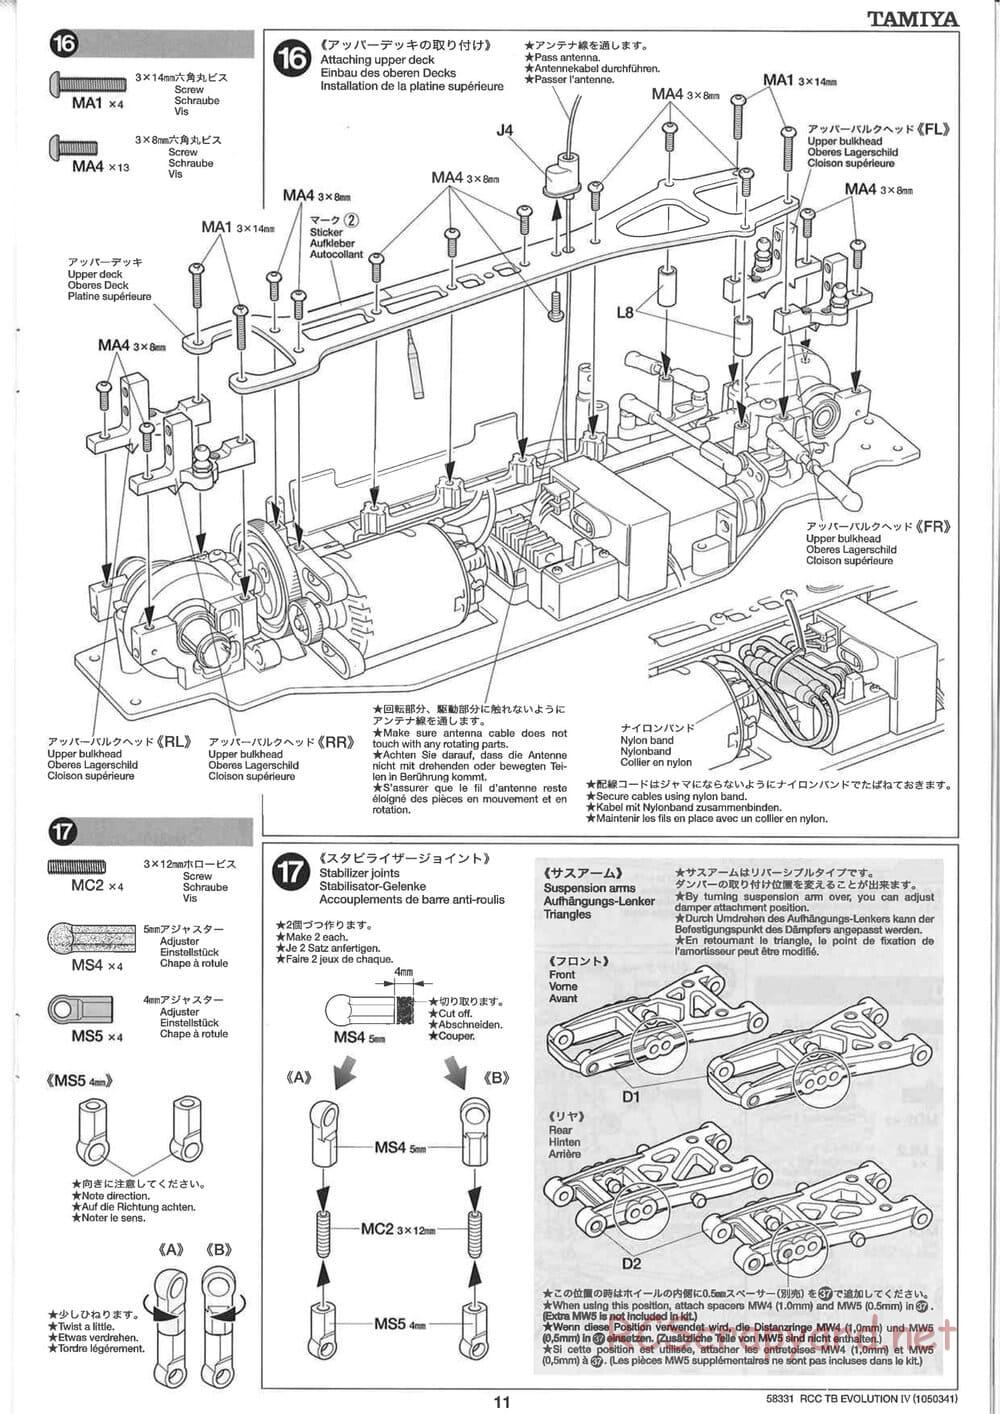 Tamiya - TB Evolution IV Chassis - Manual - Page 11